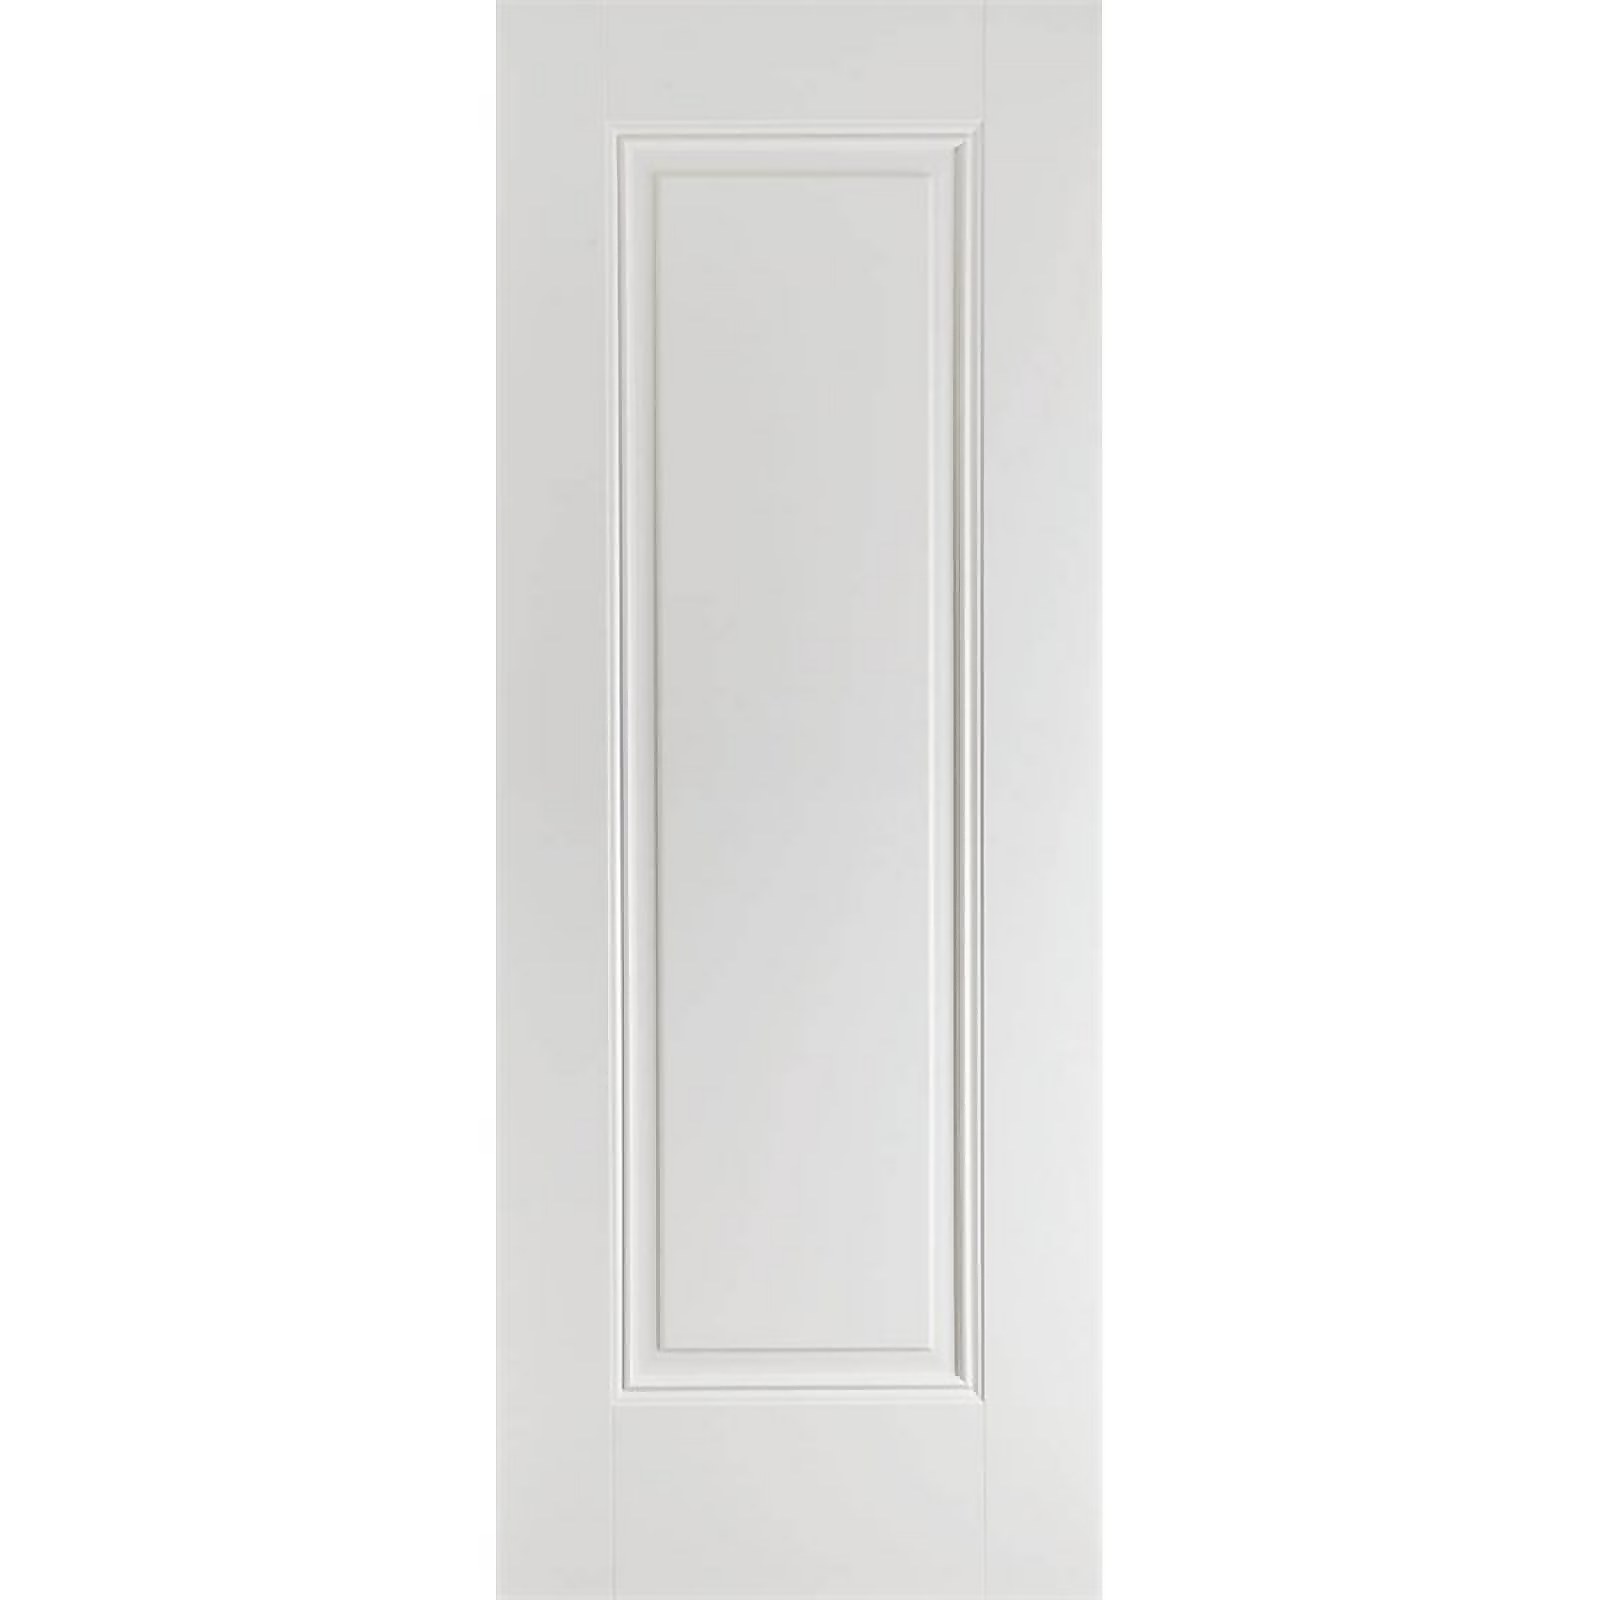 Eindhoven Internal Primed White 1 Panel Fire Door - 762 x 1981mm